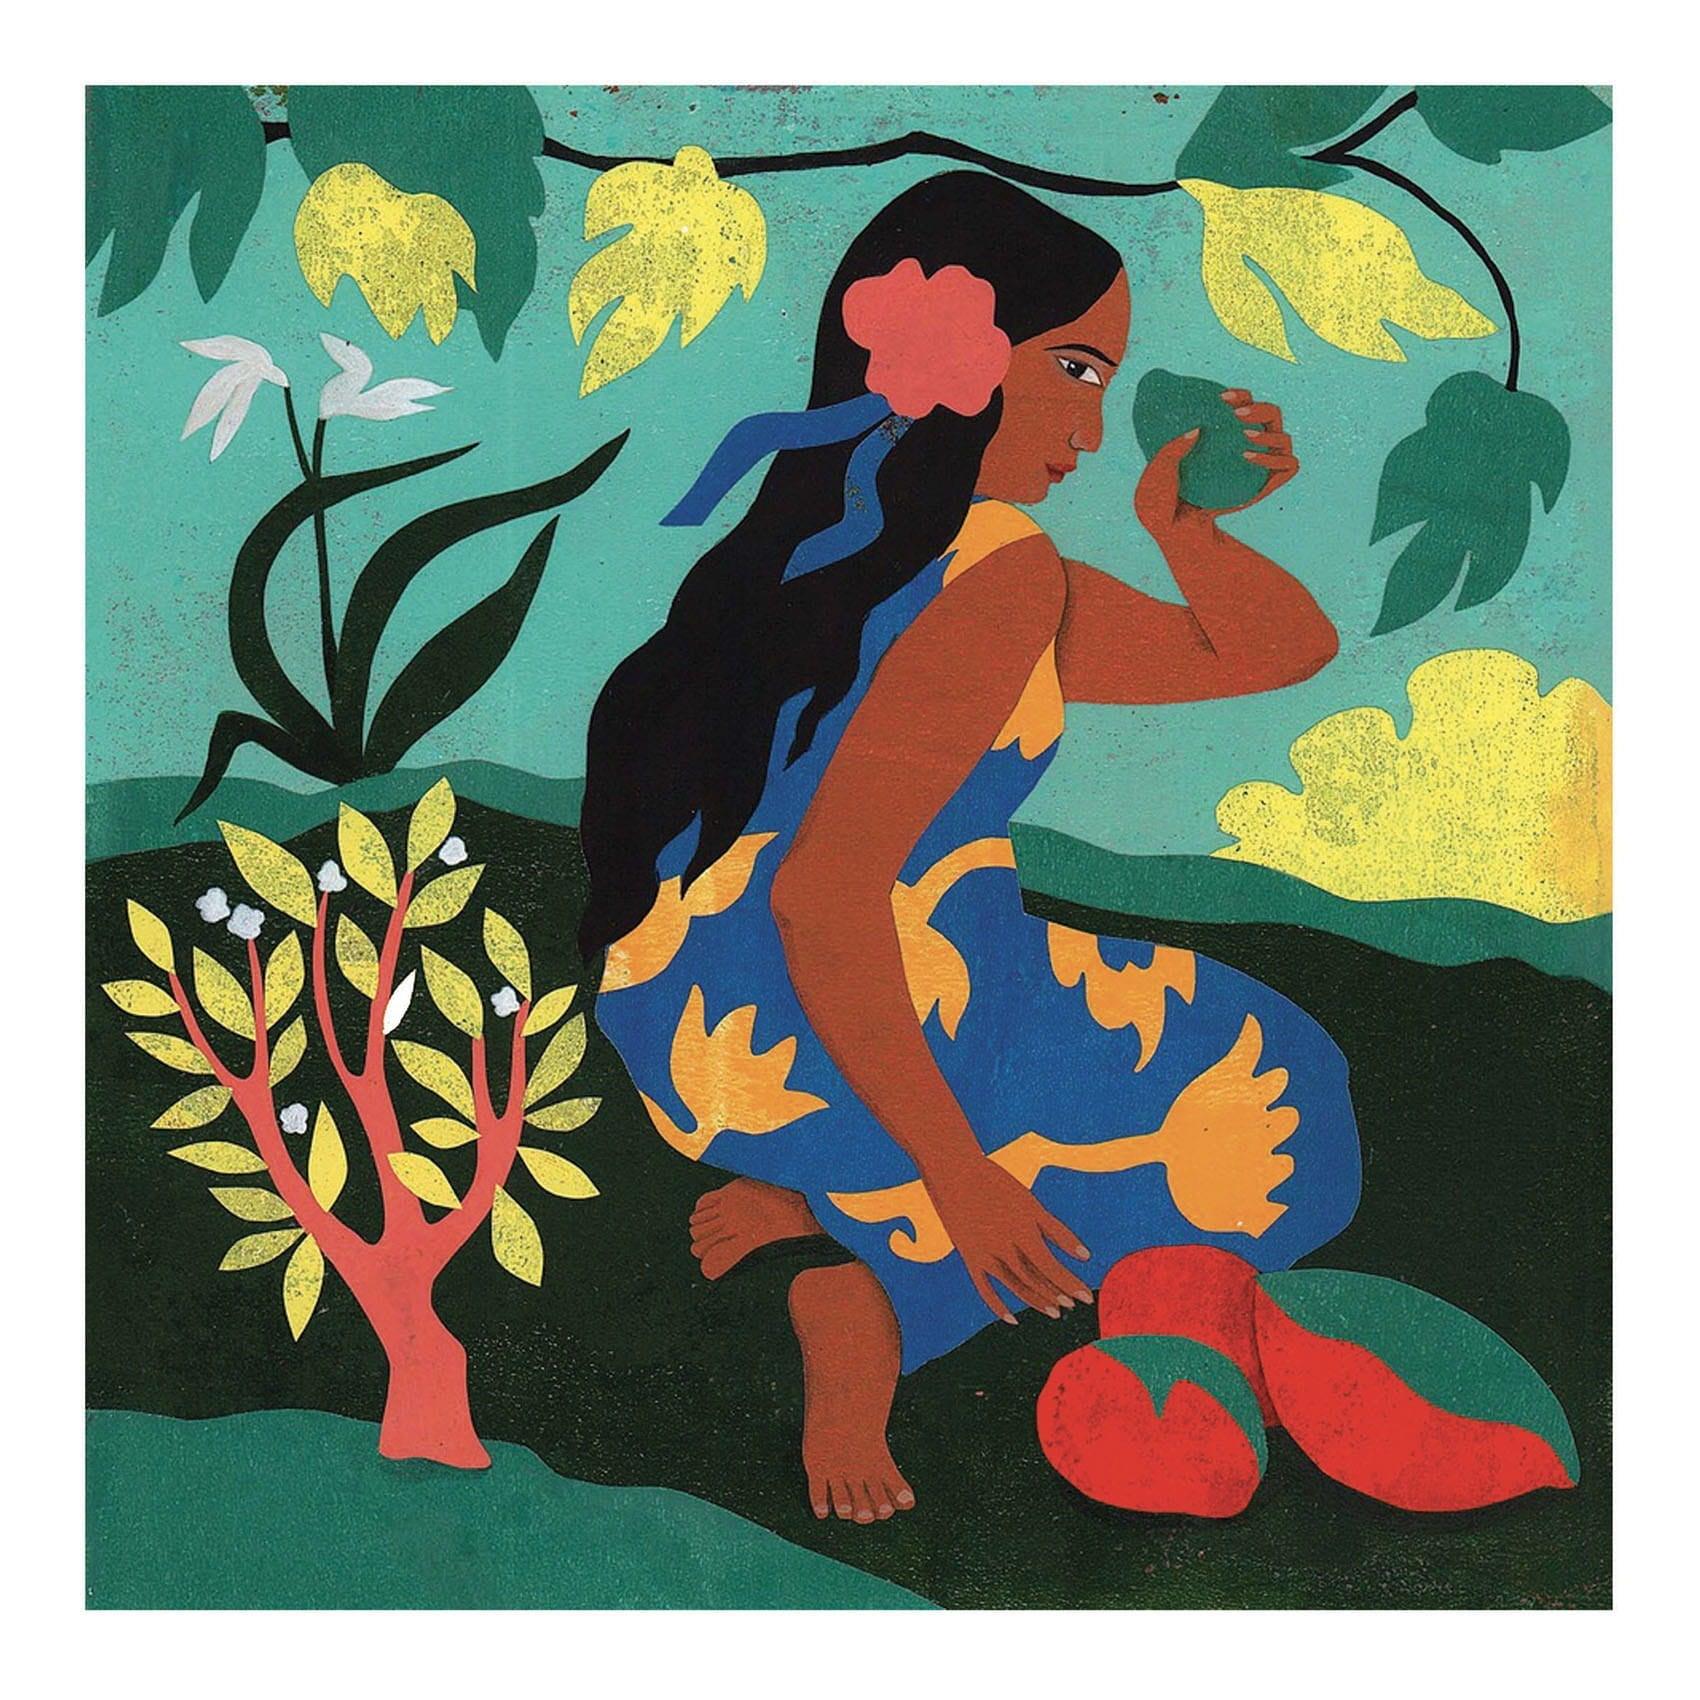 Djeco: zestaw artystyczny inspiracje Polinezja Inspired by Paul Gauguin - Noski Noski